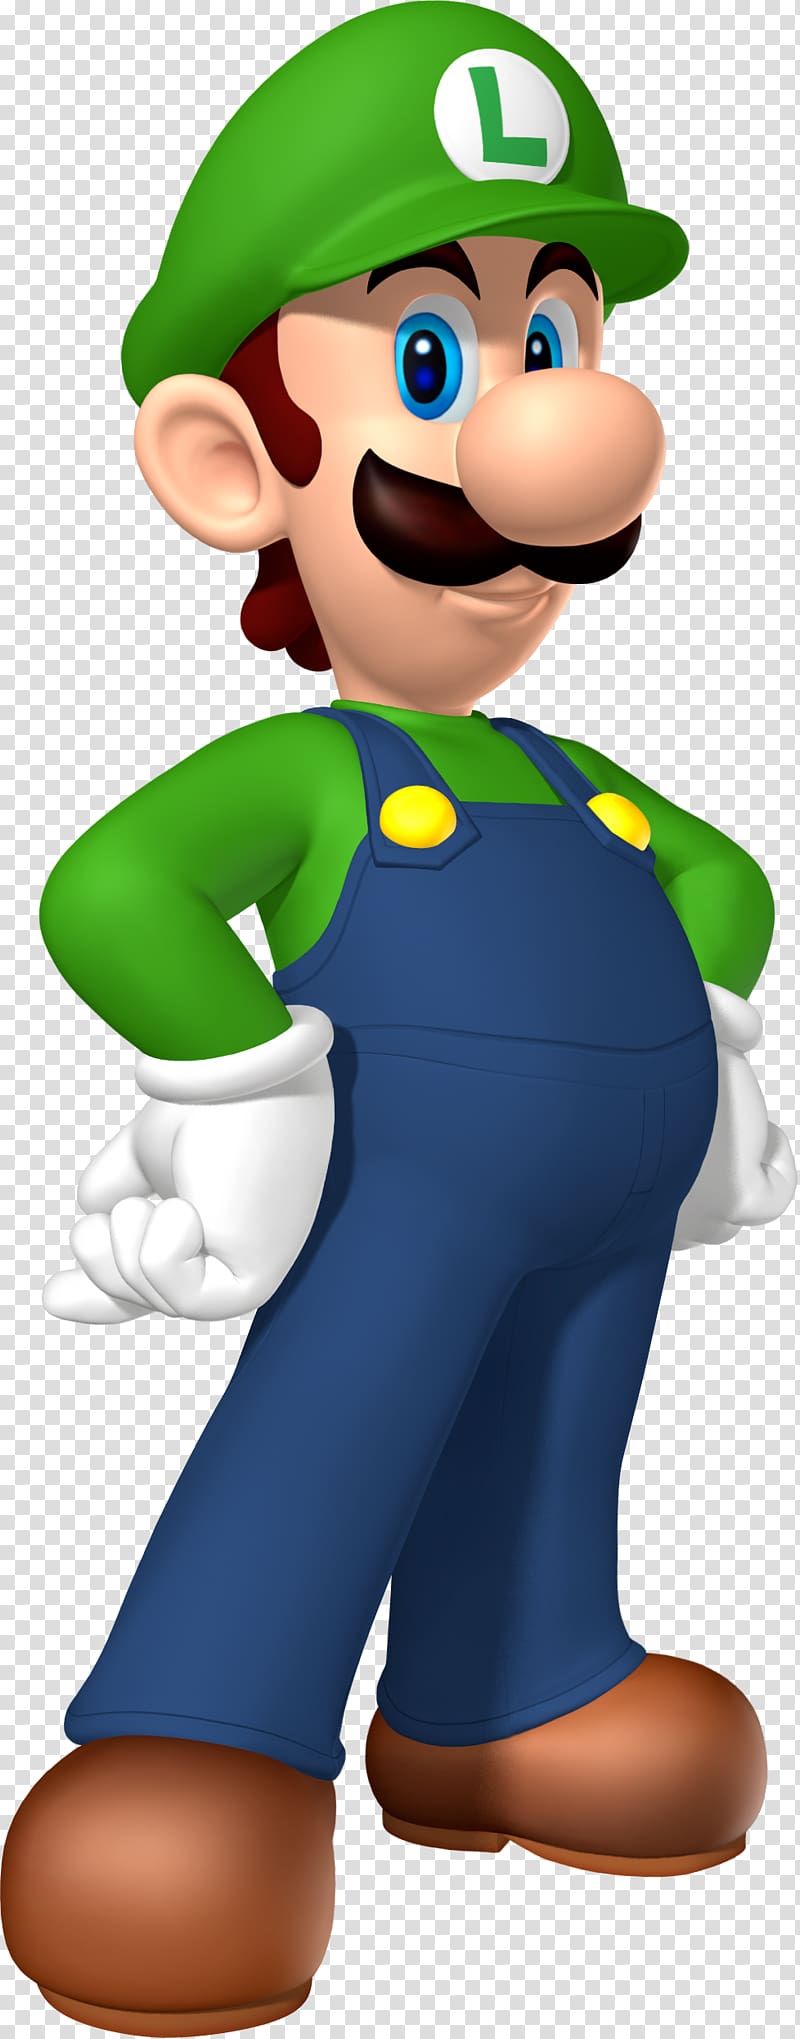 Luigi , New Super Mario Bros. U Super Smash Bros. for Nintendo 3DS and Wii U Luigis Mansion 2, Luigi transparent background PNG clipart